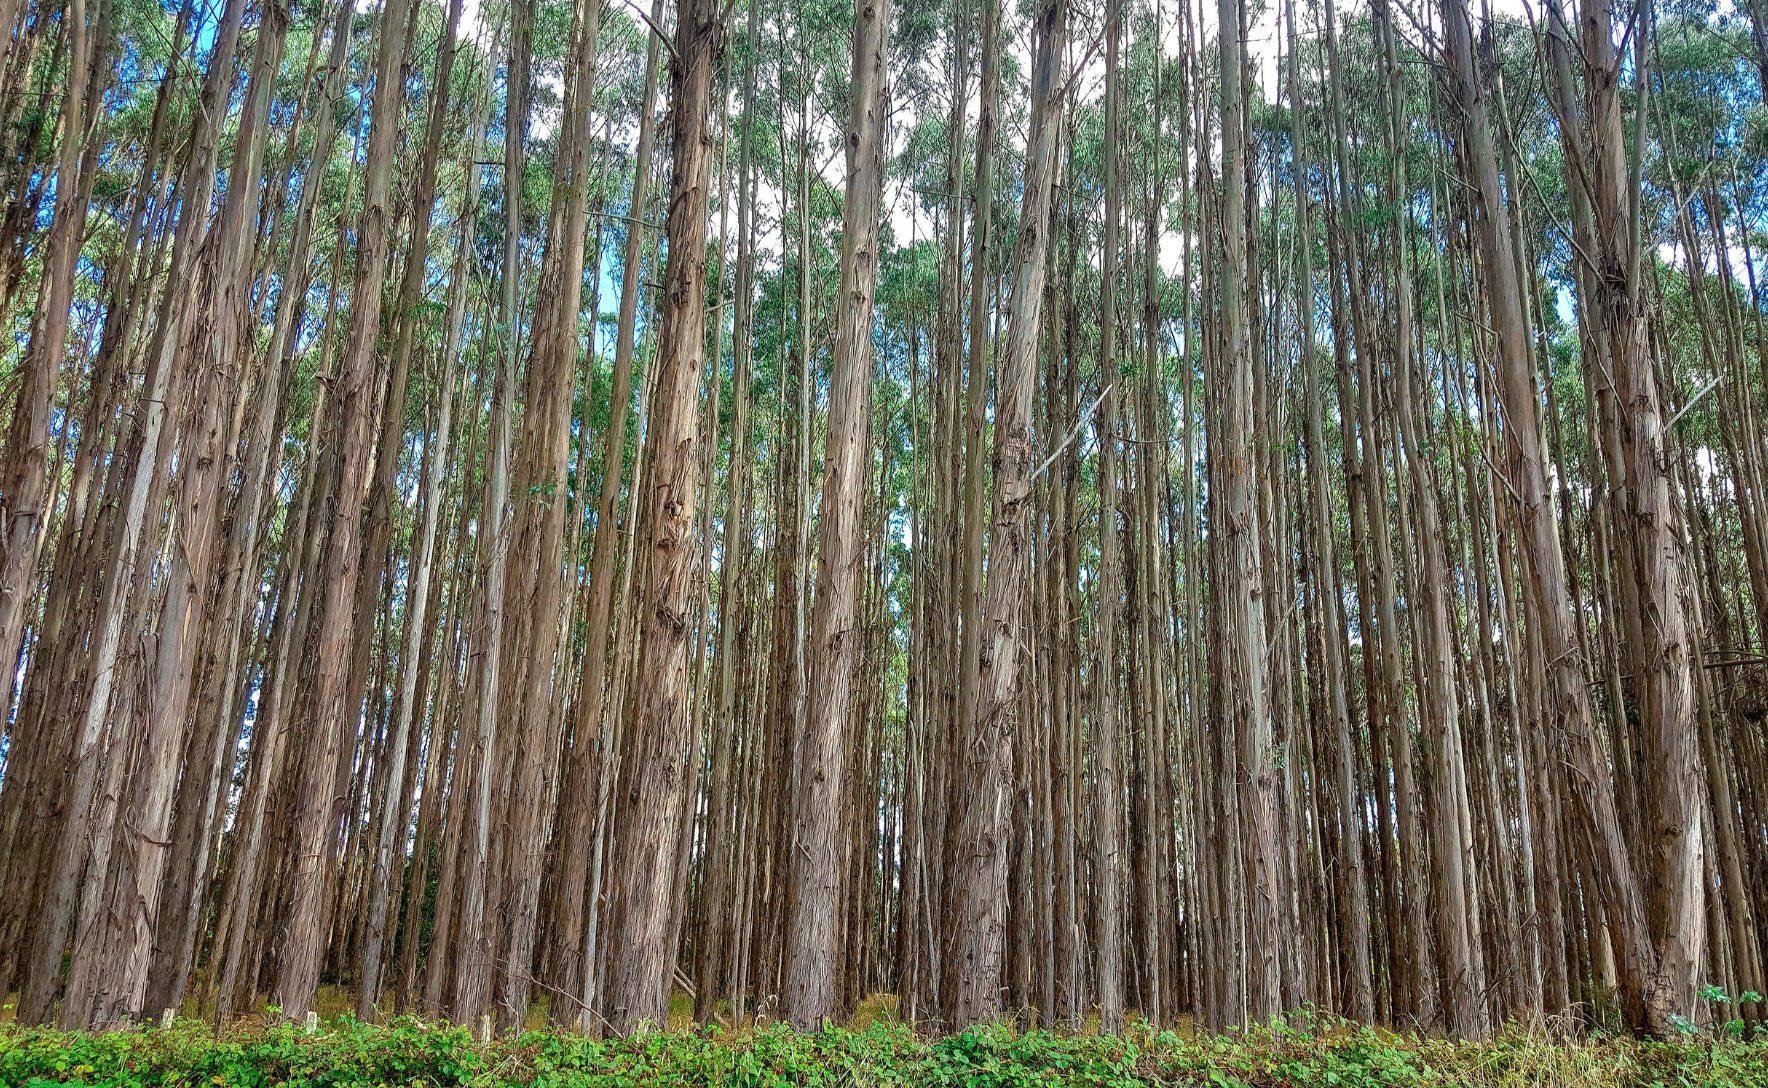 Rows of tall eucalyptus trees against a blue sky